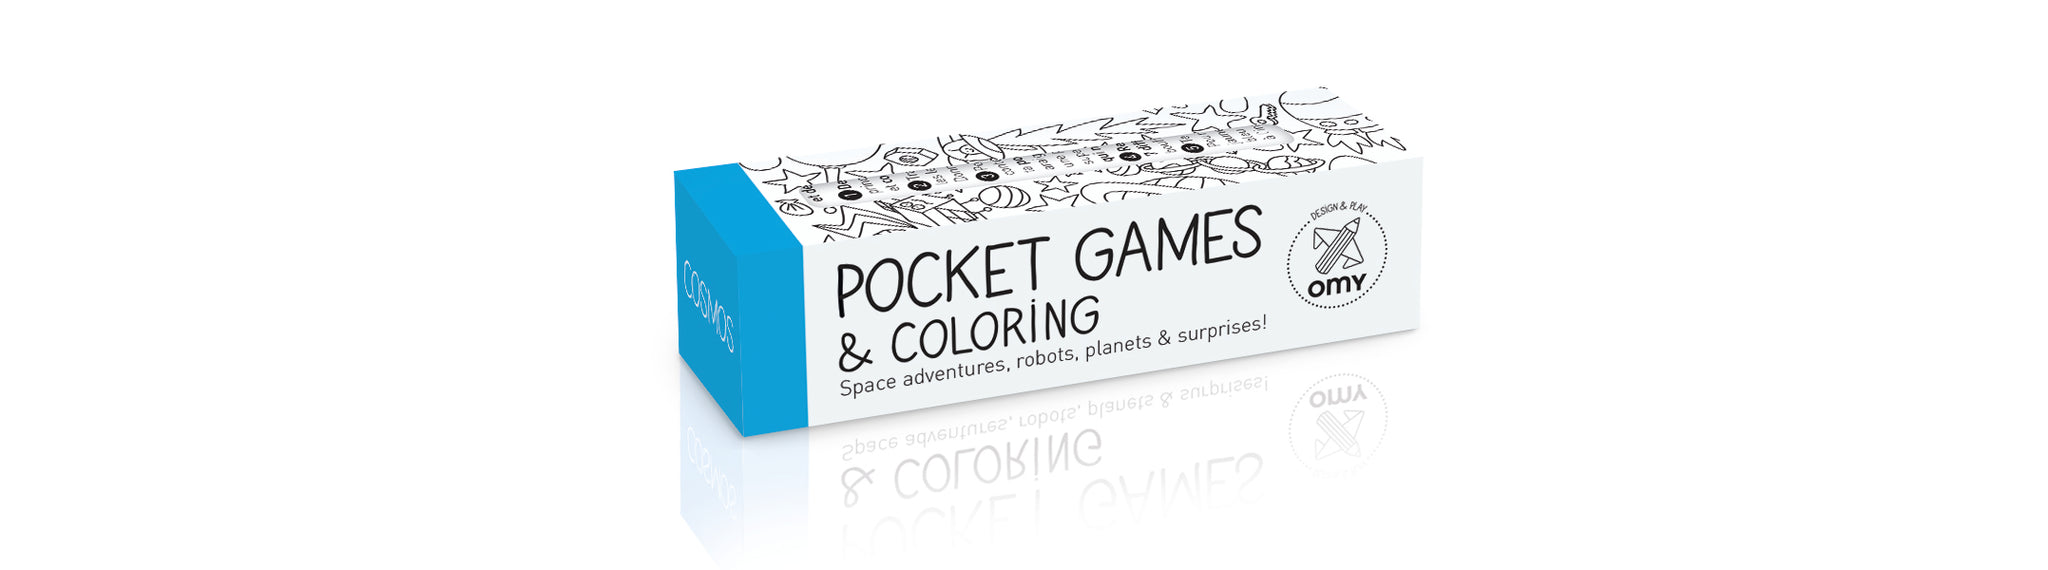 Pocket games cosmos